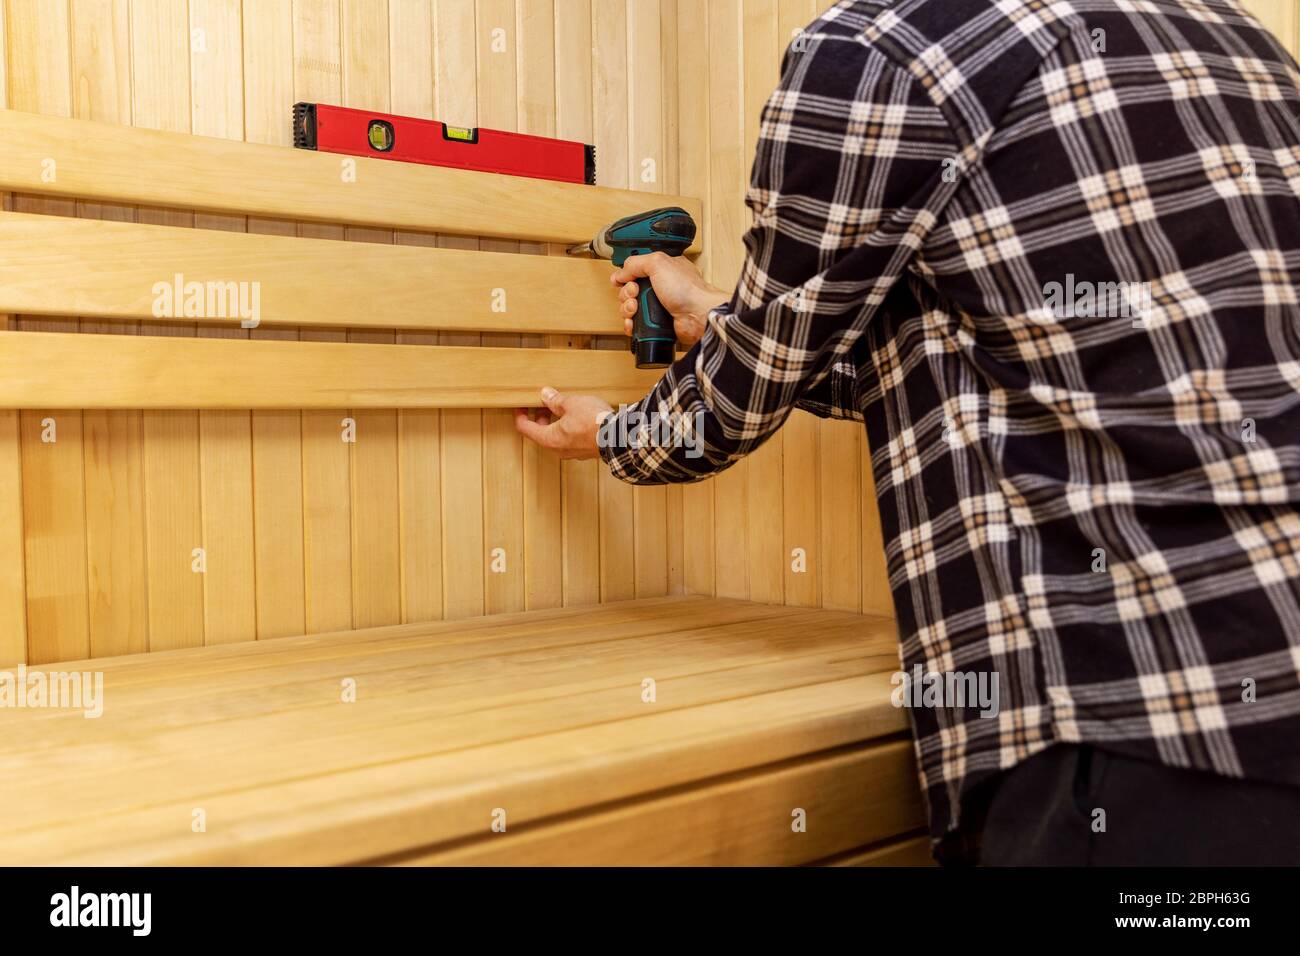 costruzione sauna - uomo che svita schienale in legno sulla parete Foto Stock